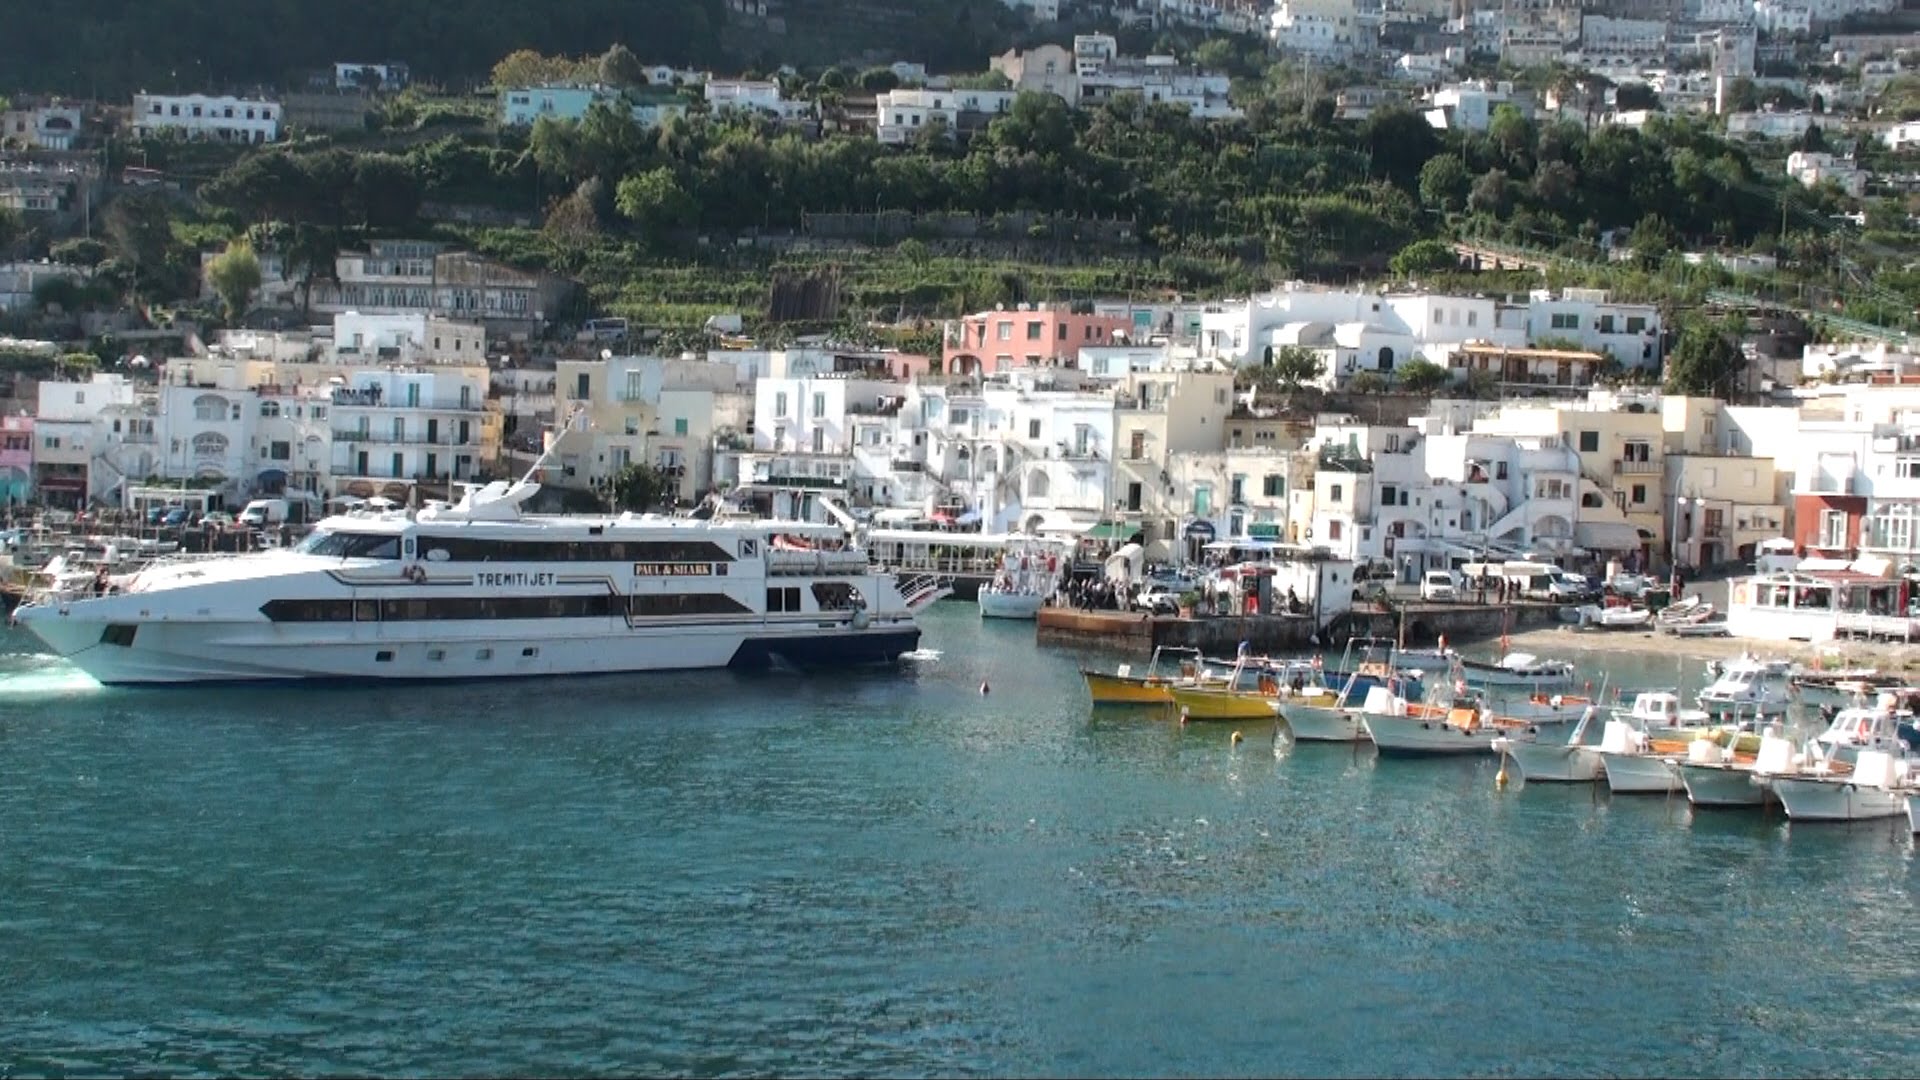 Da Napoli a Capri con la droga in tasca: arrestato 49enne